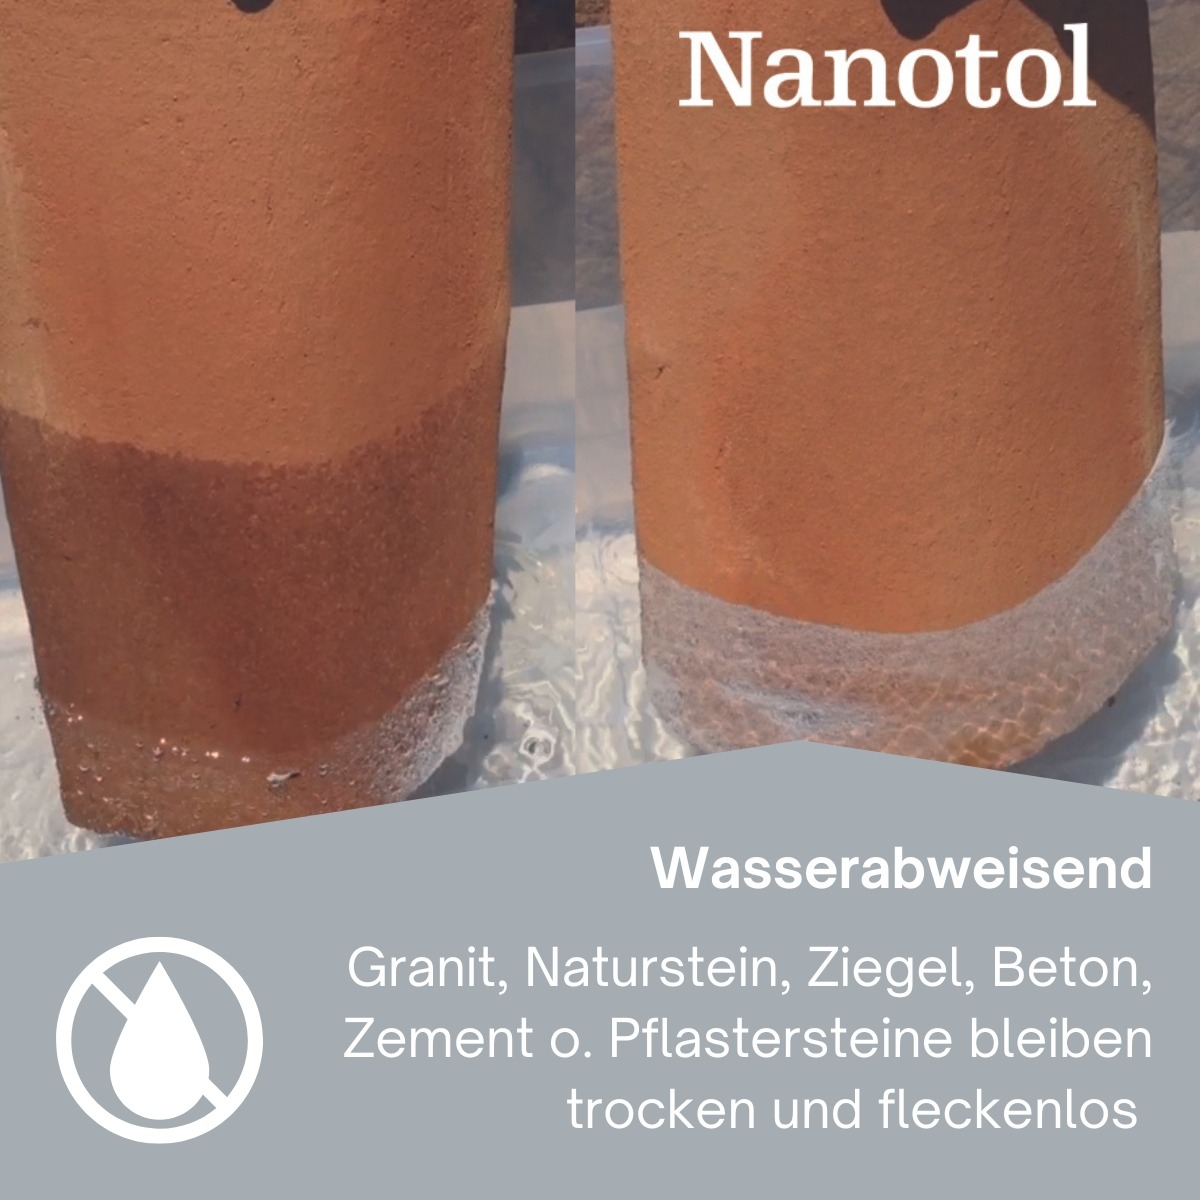 nanotol mineralische oberflaechen protector gallery protector NMOP stein impraegnierung wasserabweisend 1200x1200 2